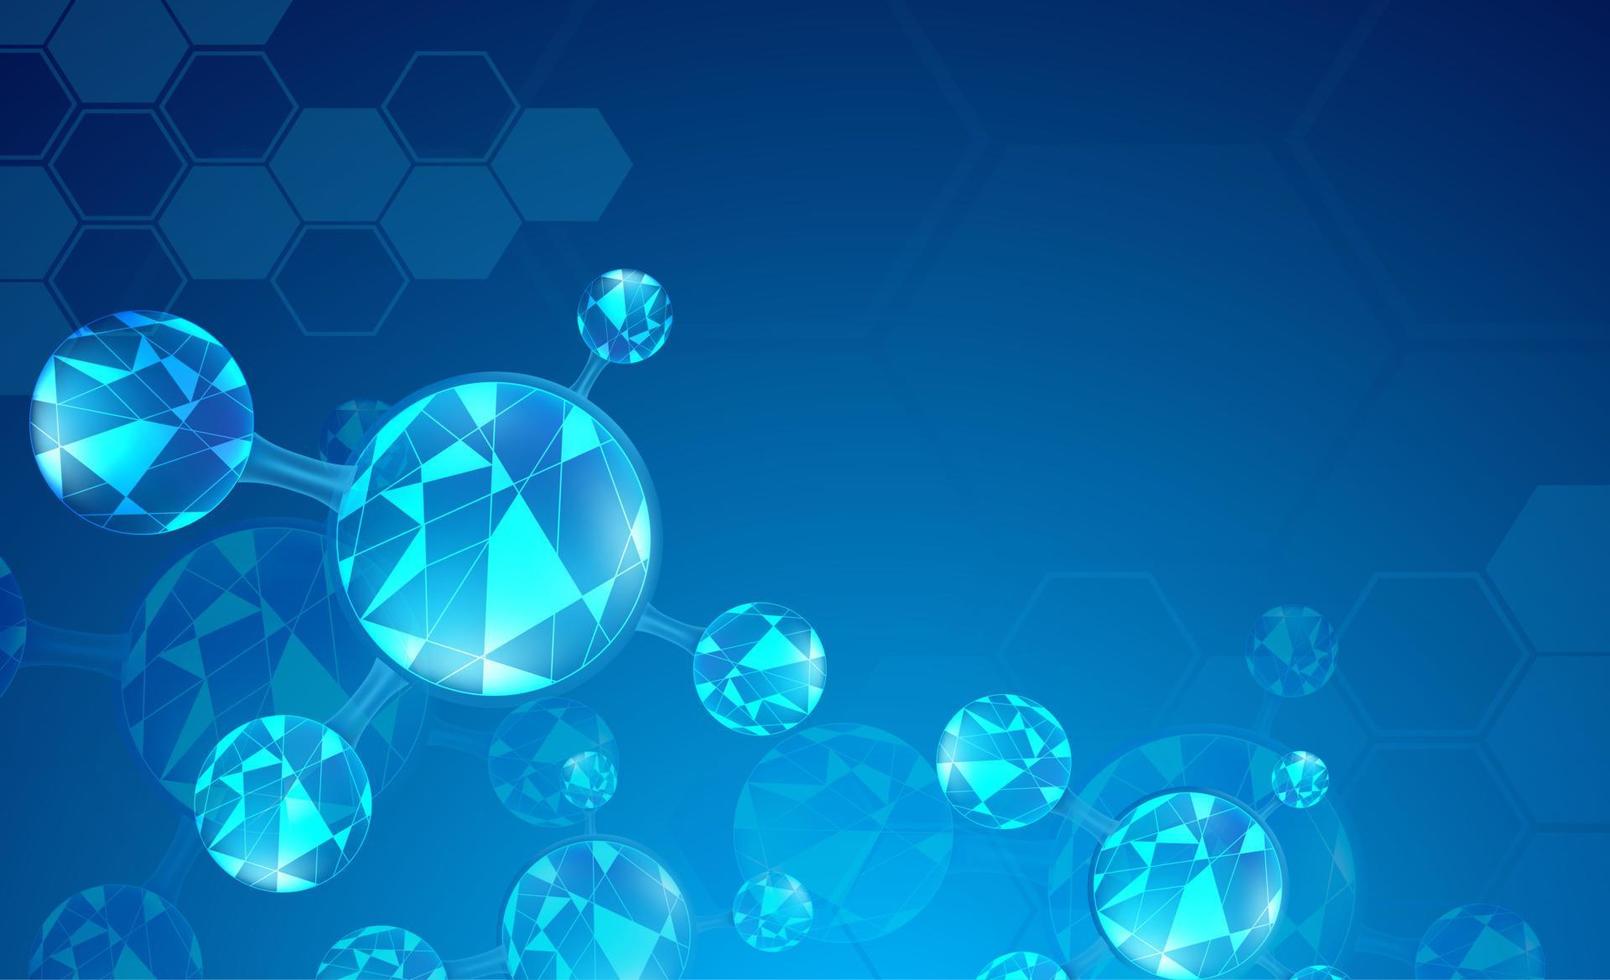 fundo de ciência abstrata com elementos de moléculas. fundo azul gradiente com molécula de dna para conceitos de medicina, ciência e tecnologia. ilustração vetorial vetor